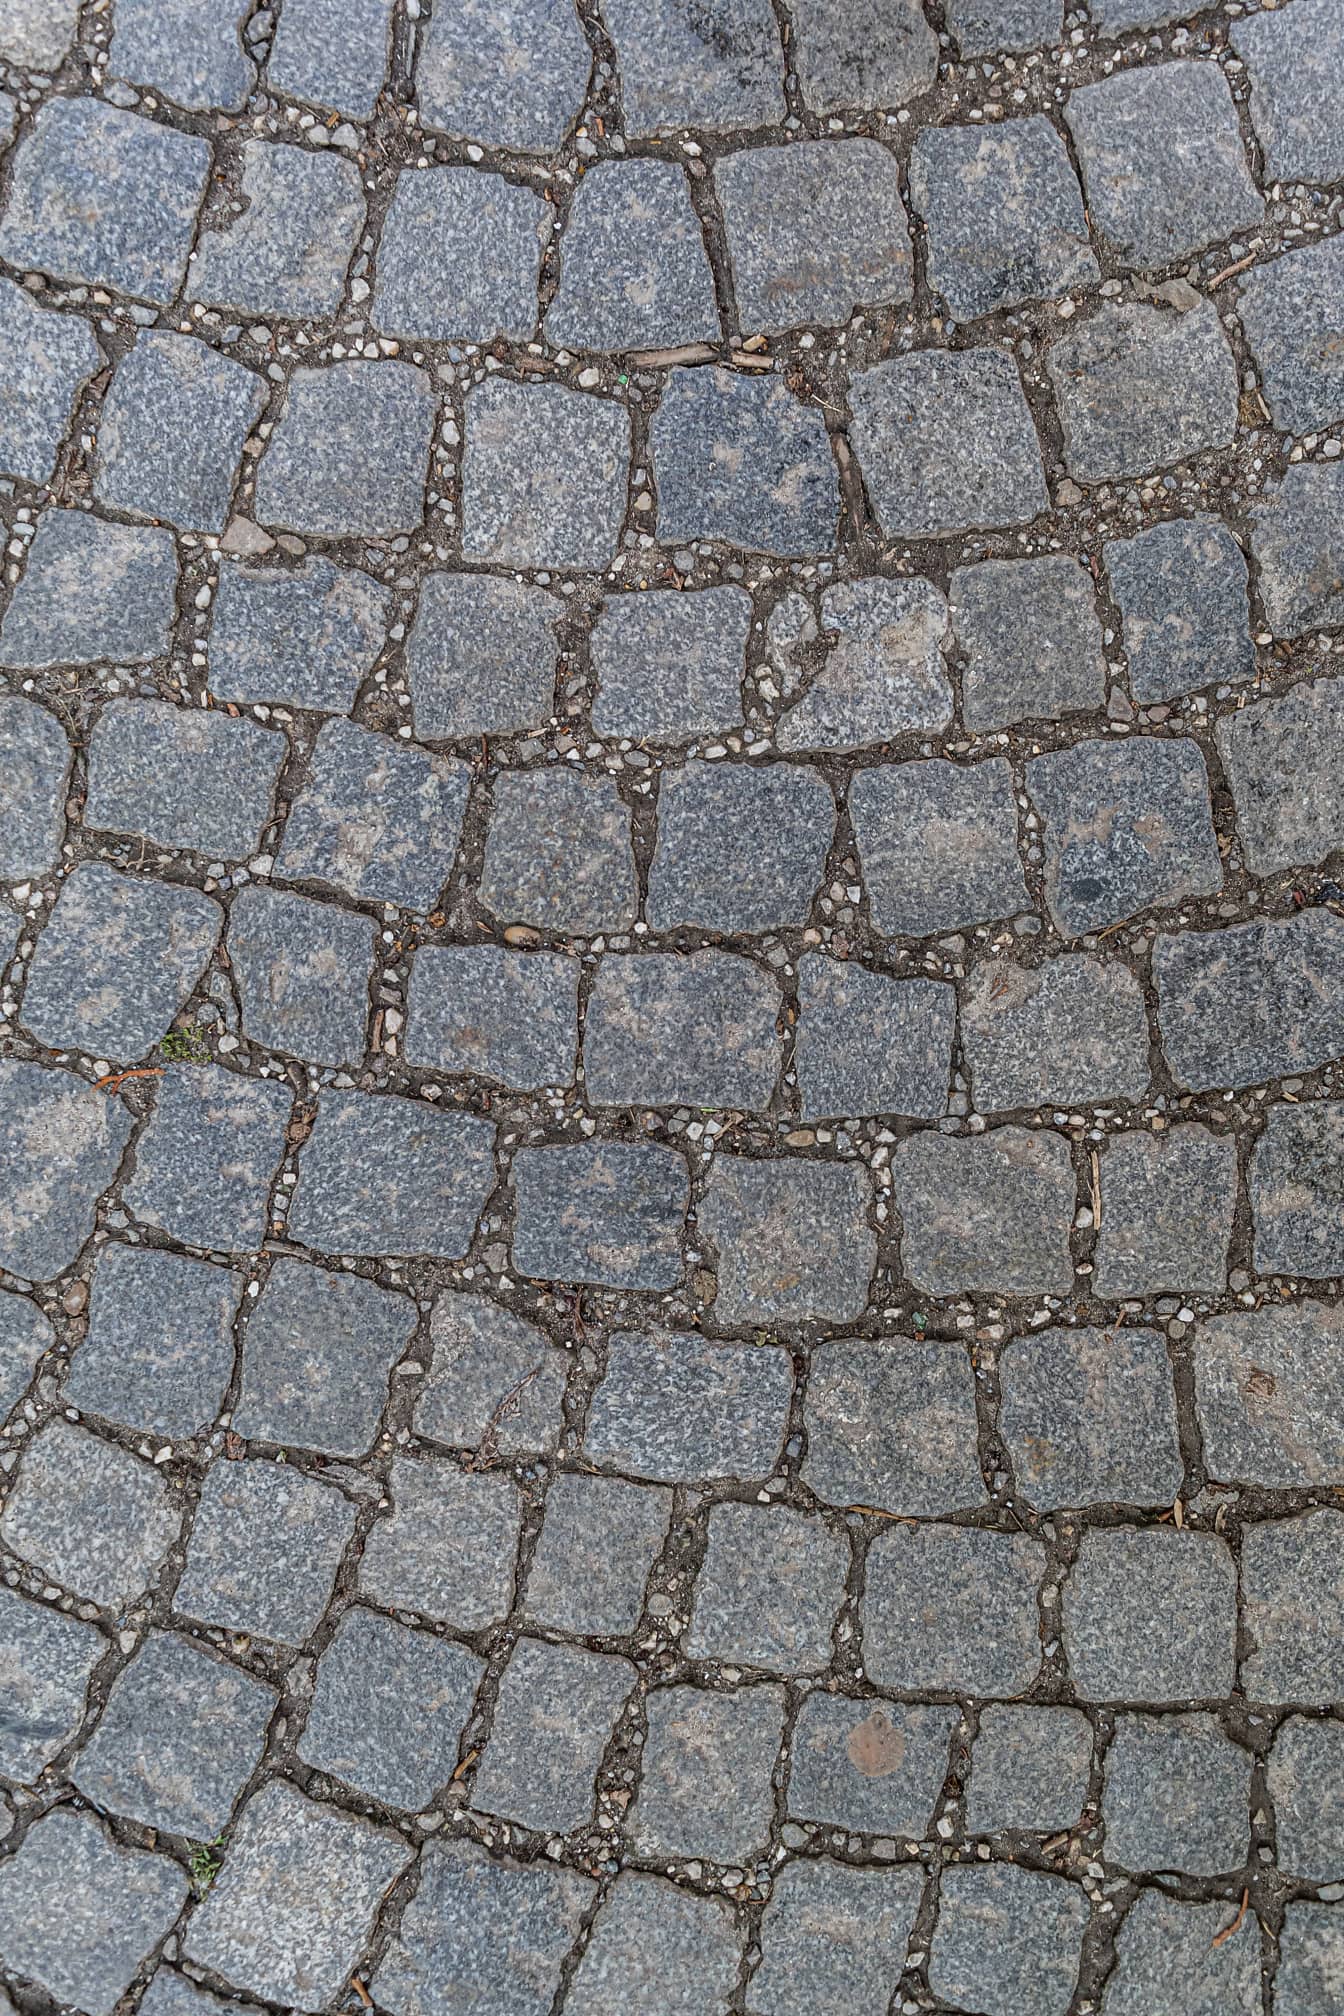 Brostein (paving stone) tekstur kube steiner mønster